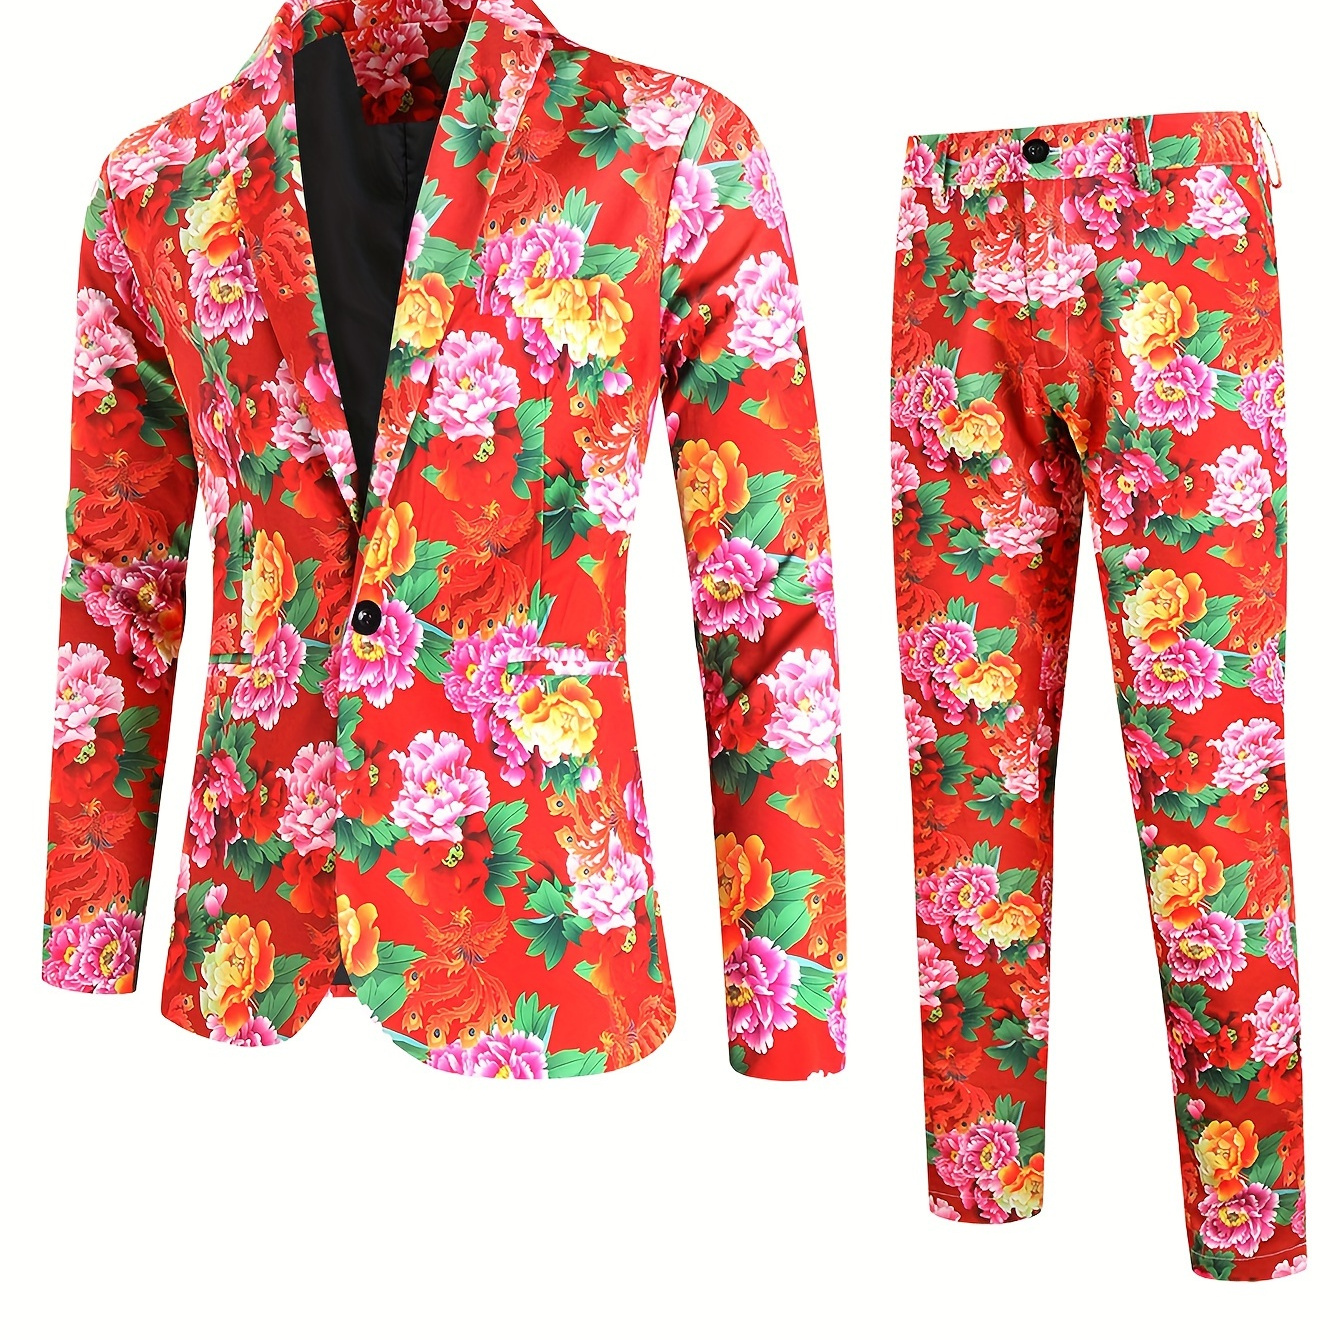 

Chic 2 Pieces Set, Men's Floral Print 1 Button Suit Jacket & Dress Pants Suit Set For Business Dinner Wedding Party